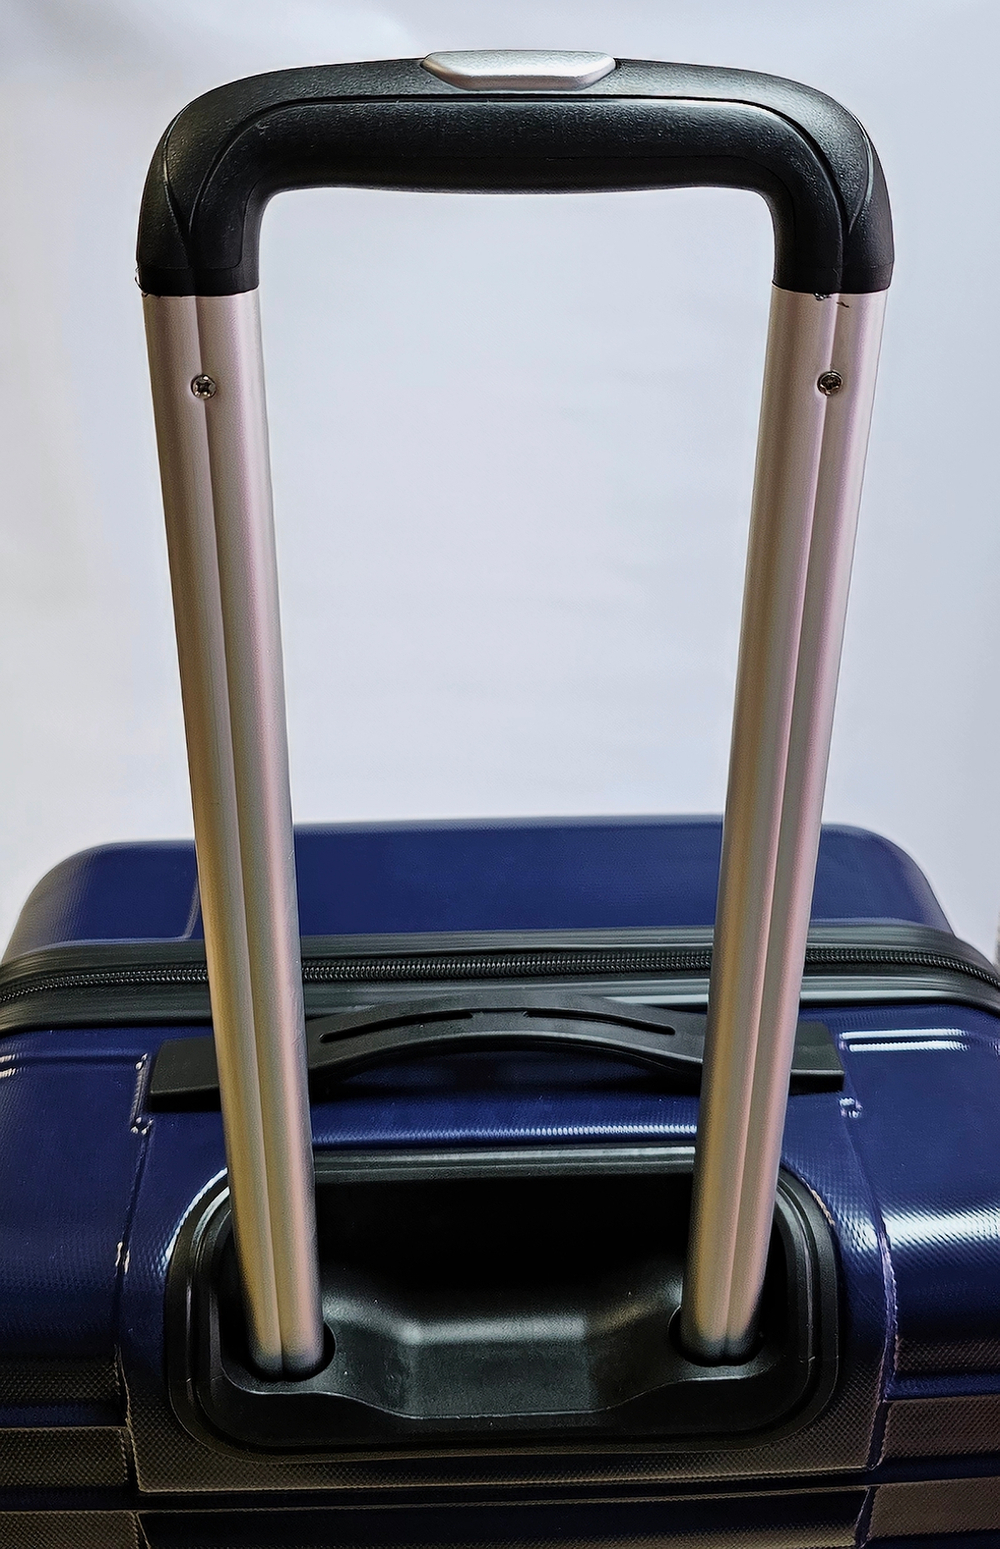 Чемодан на колесах / Чемодан Global Case средний M+, 69 л, 3,2 кг (темно-синий)